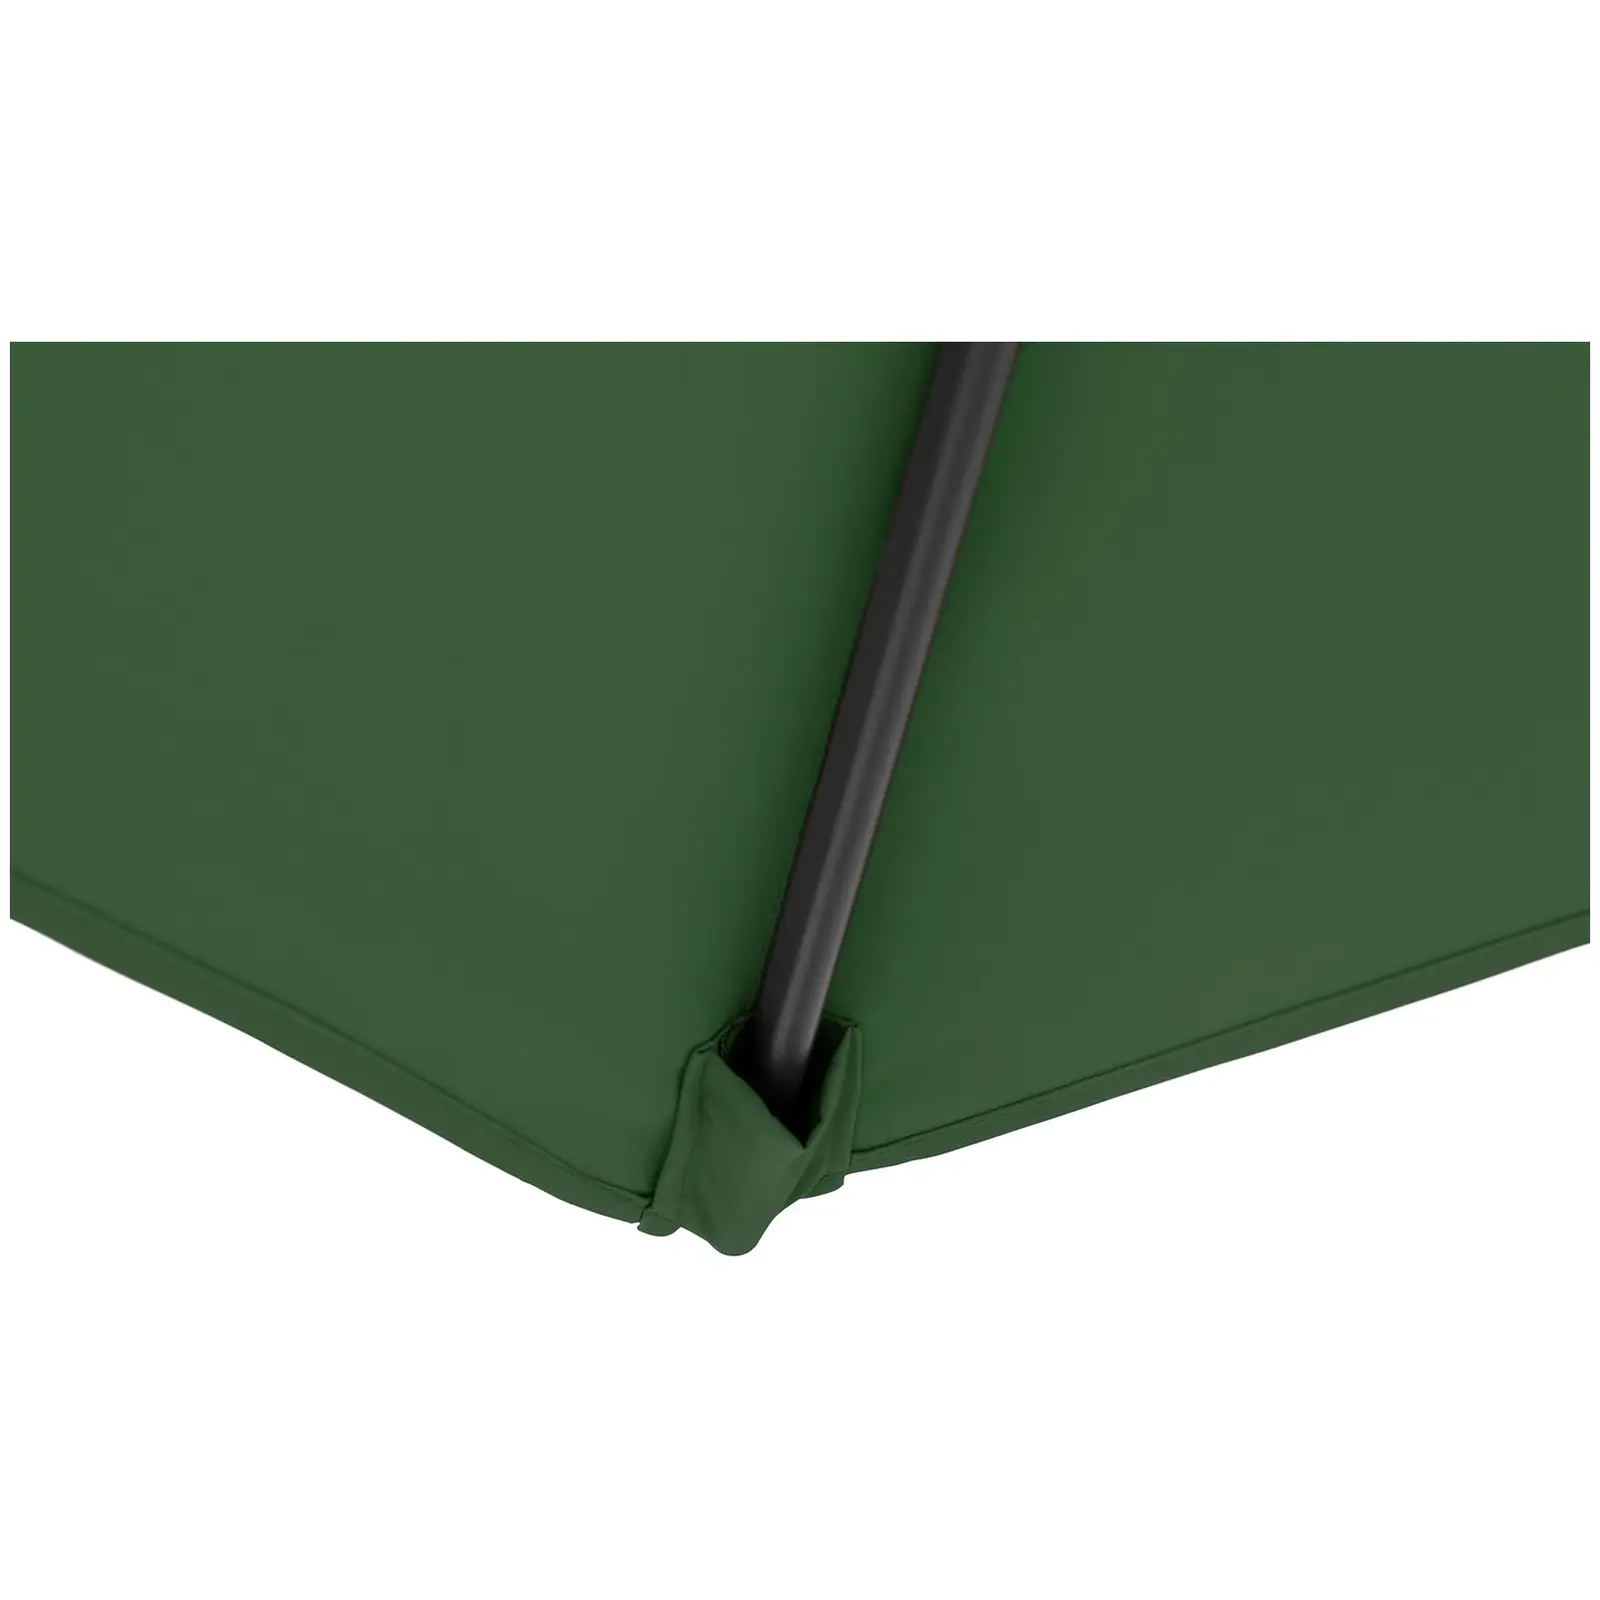 B-zboží Boční slunečník - zelený - kulatý - Ø 300 cm - naklápěcí